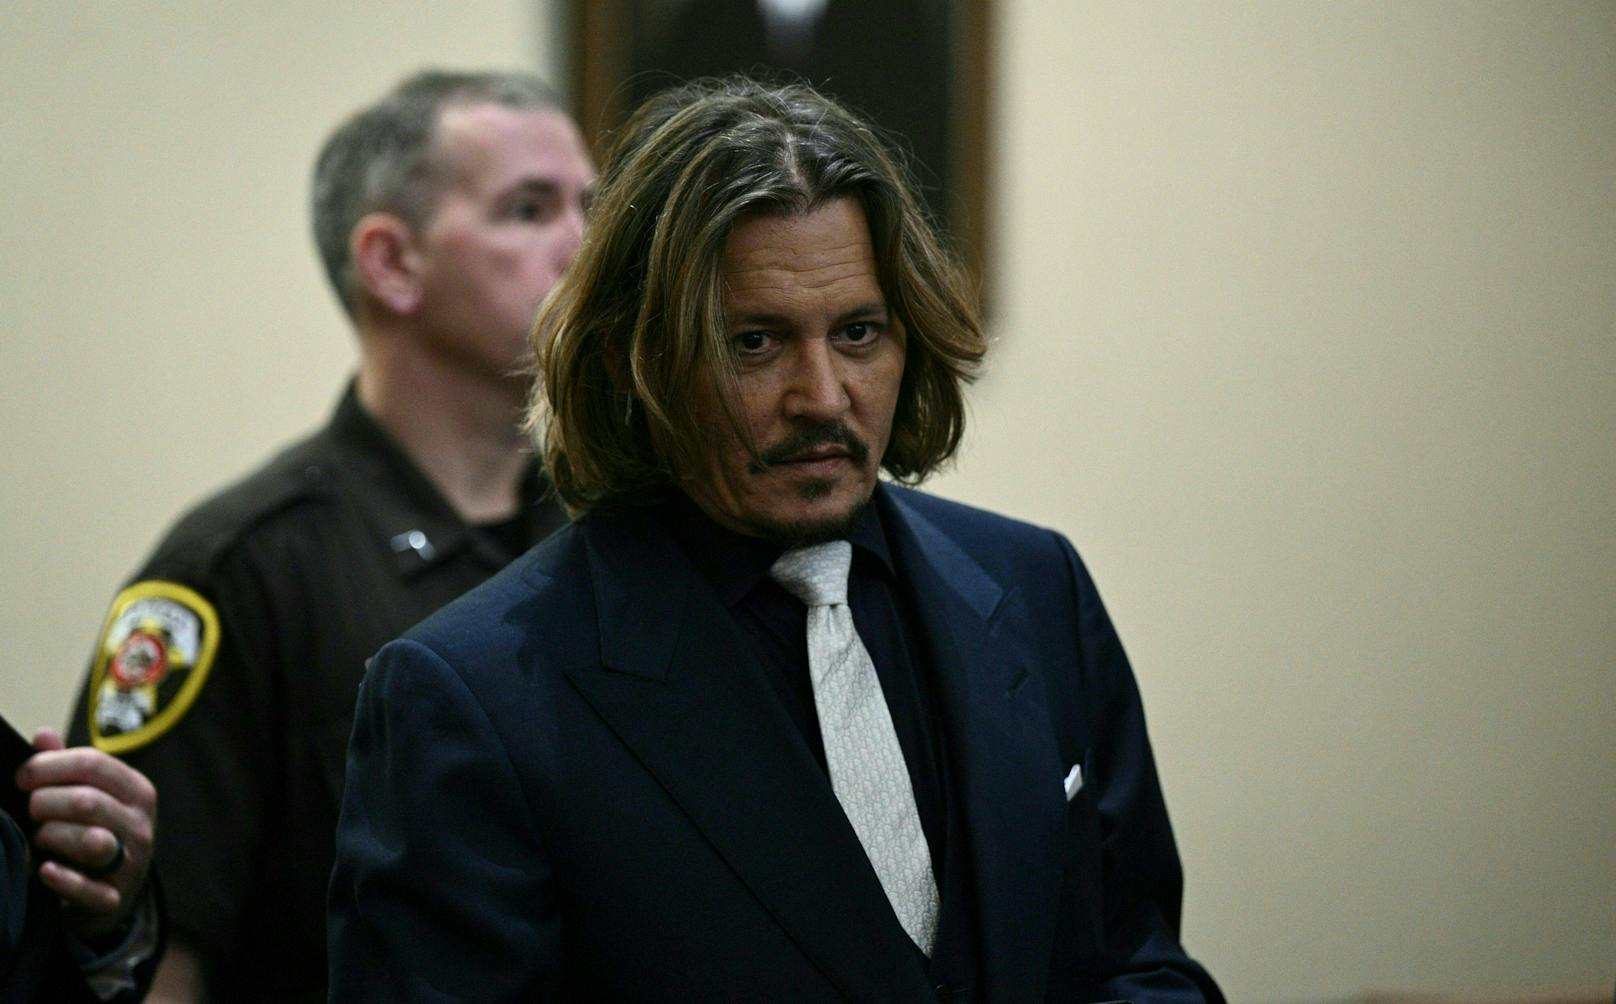 Johnny Depp verzichtet laut seinem Anwalt auf das Geld. Ihm ging es um etwas "kostbareres".